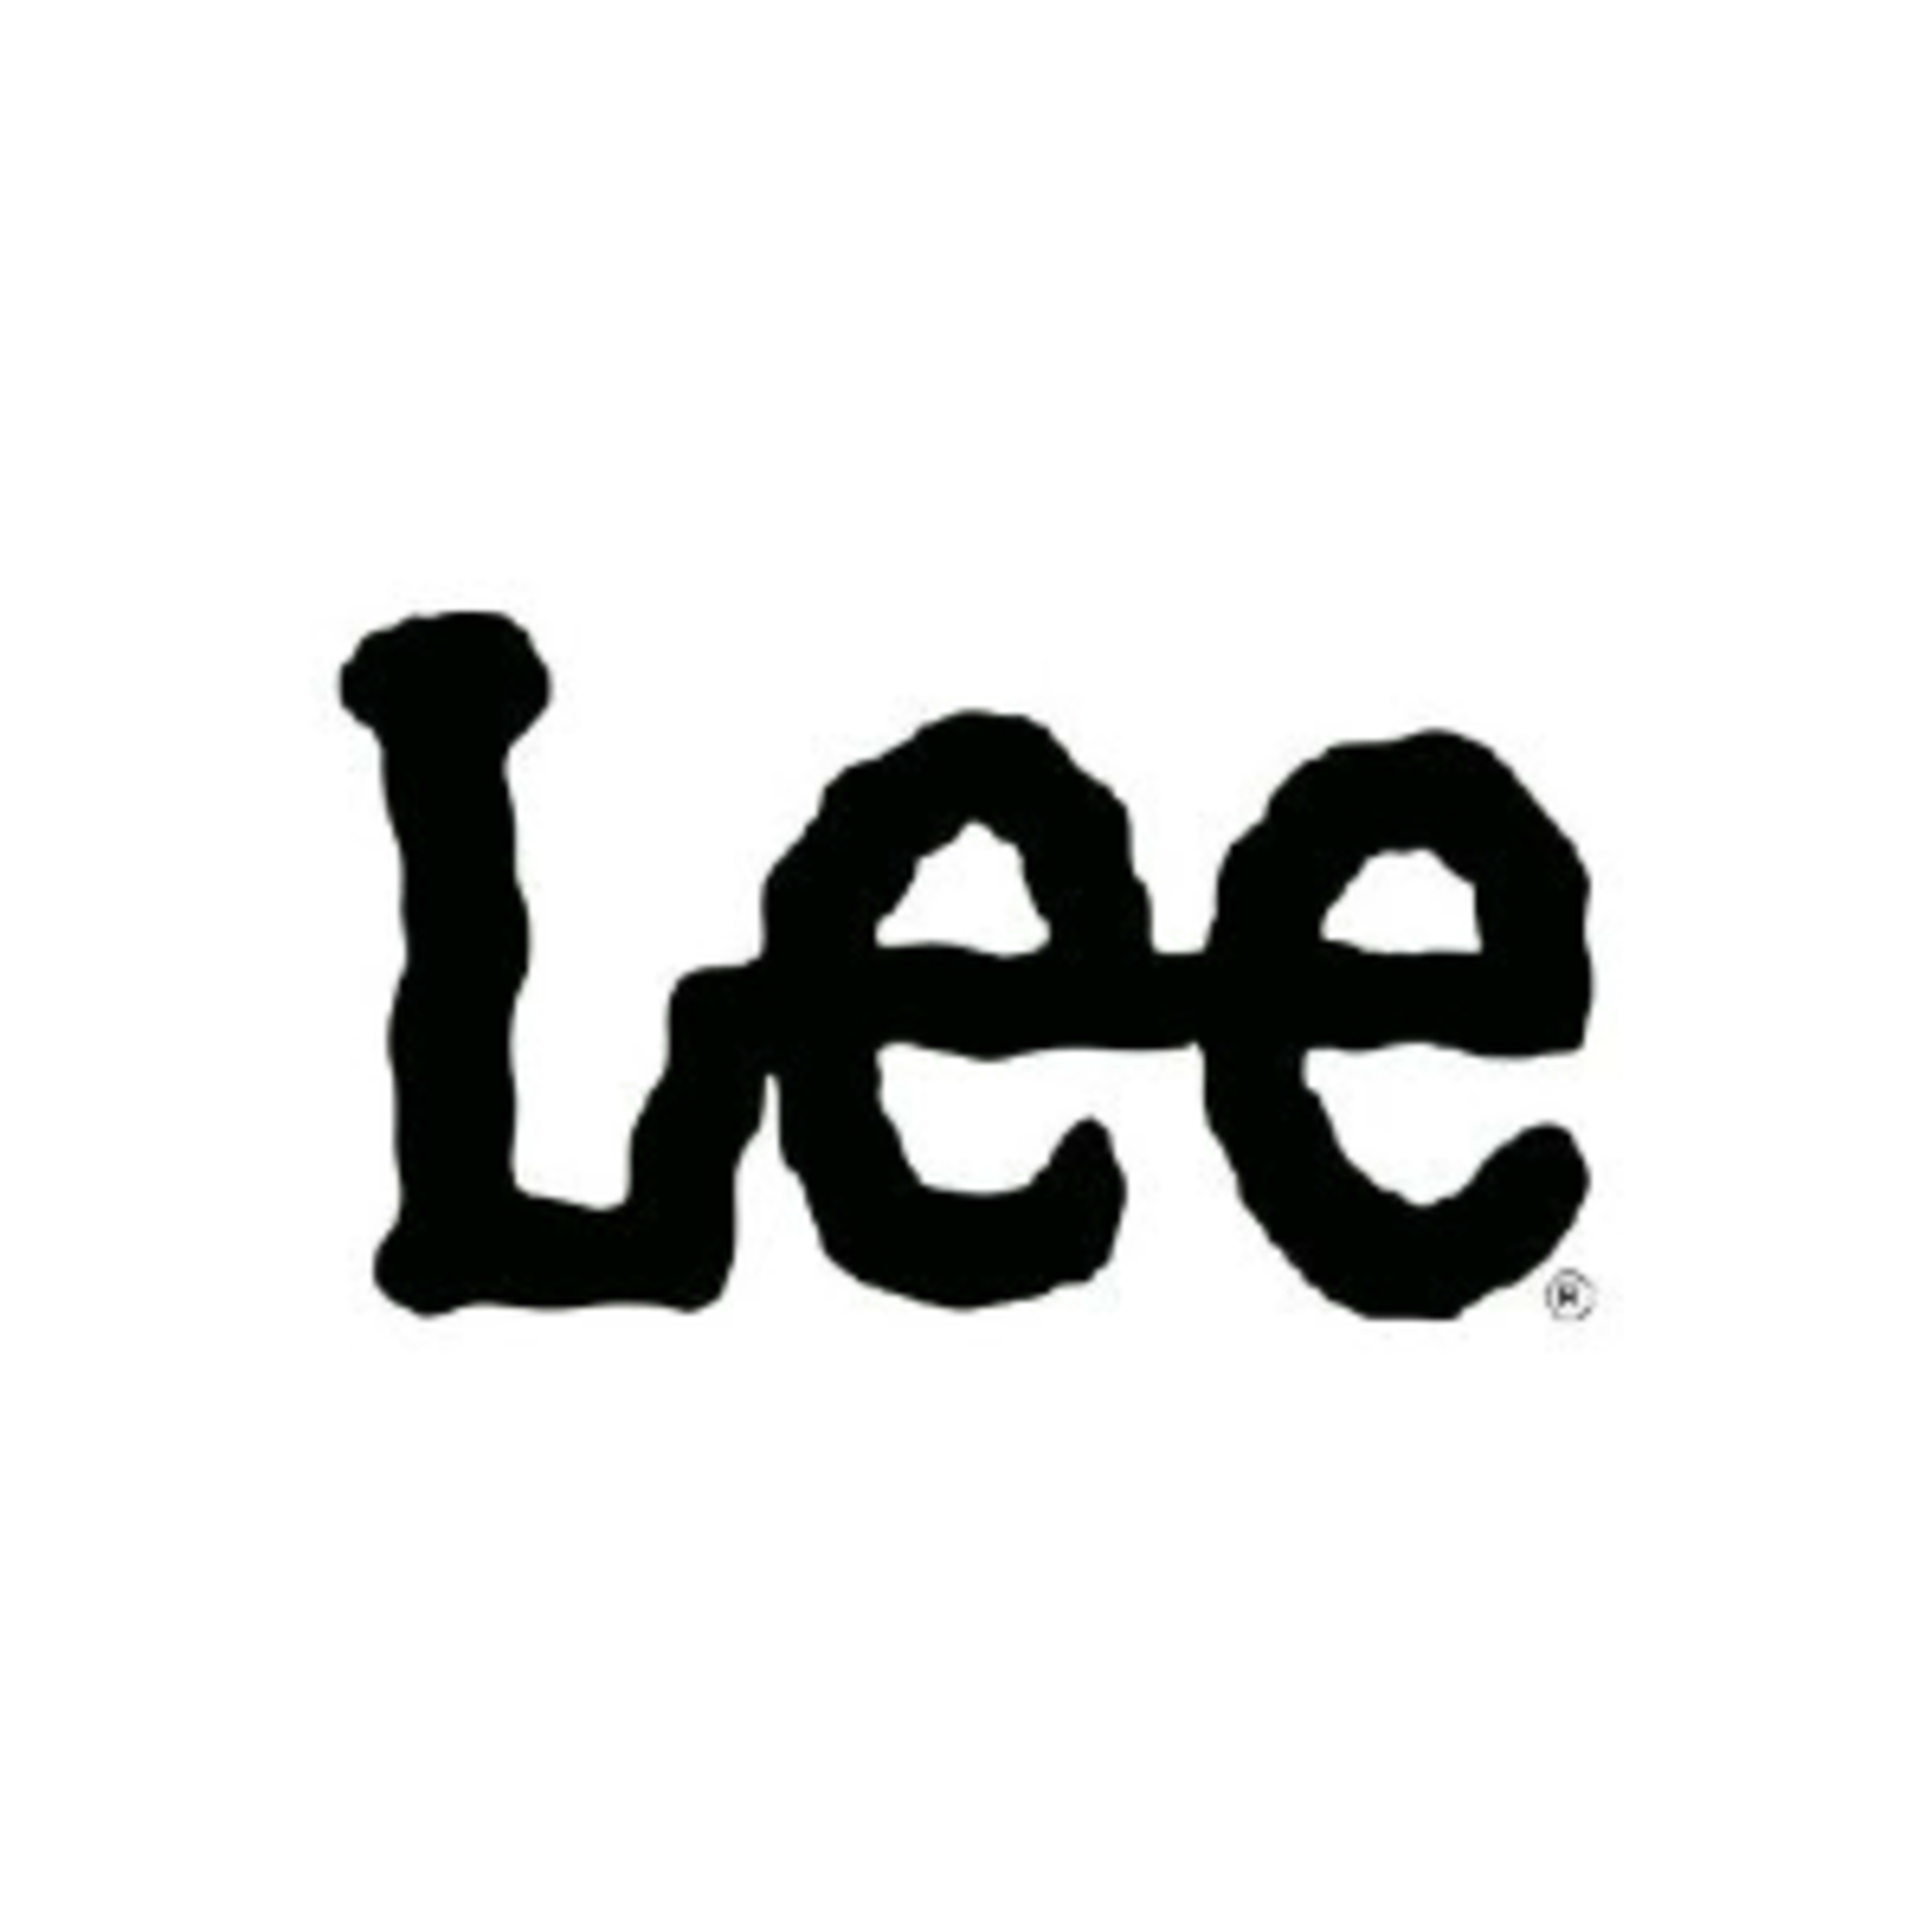 Lee Jeans Code